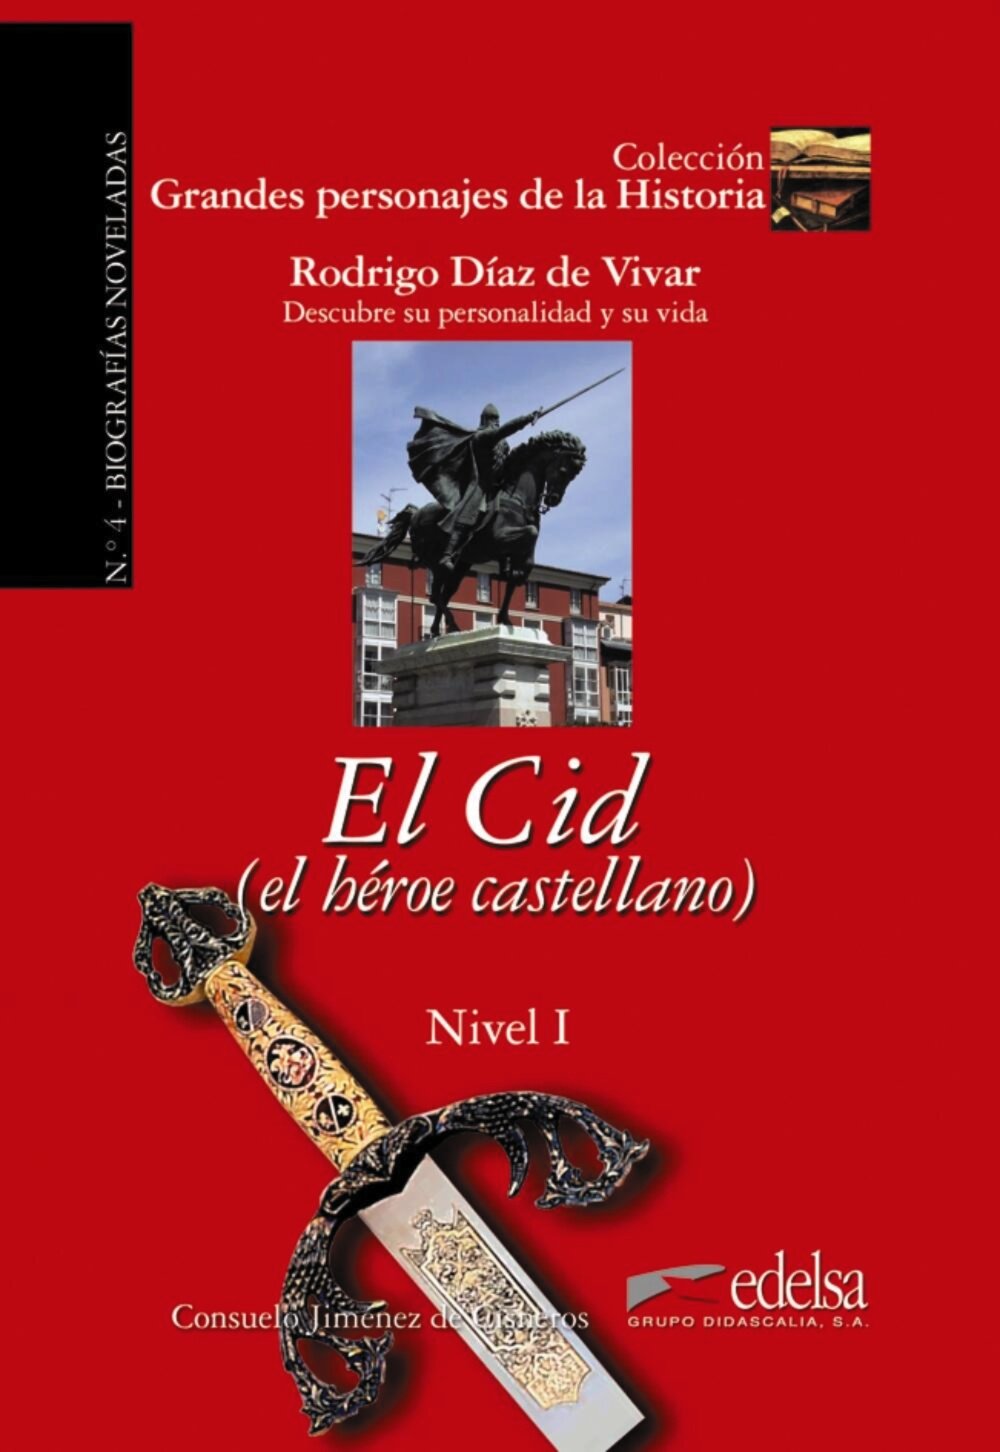 El Cid. El heroe castellano (Jimenez de Cisneros Consuelo) - фото №2